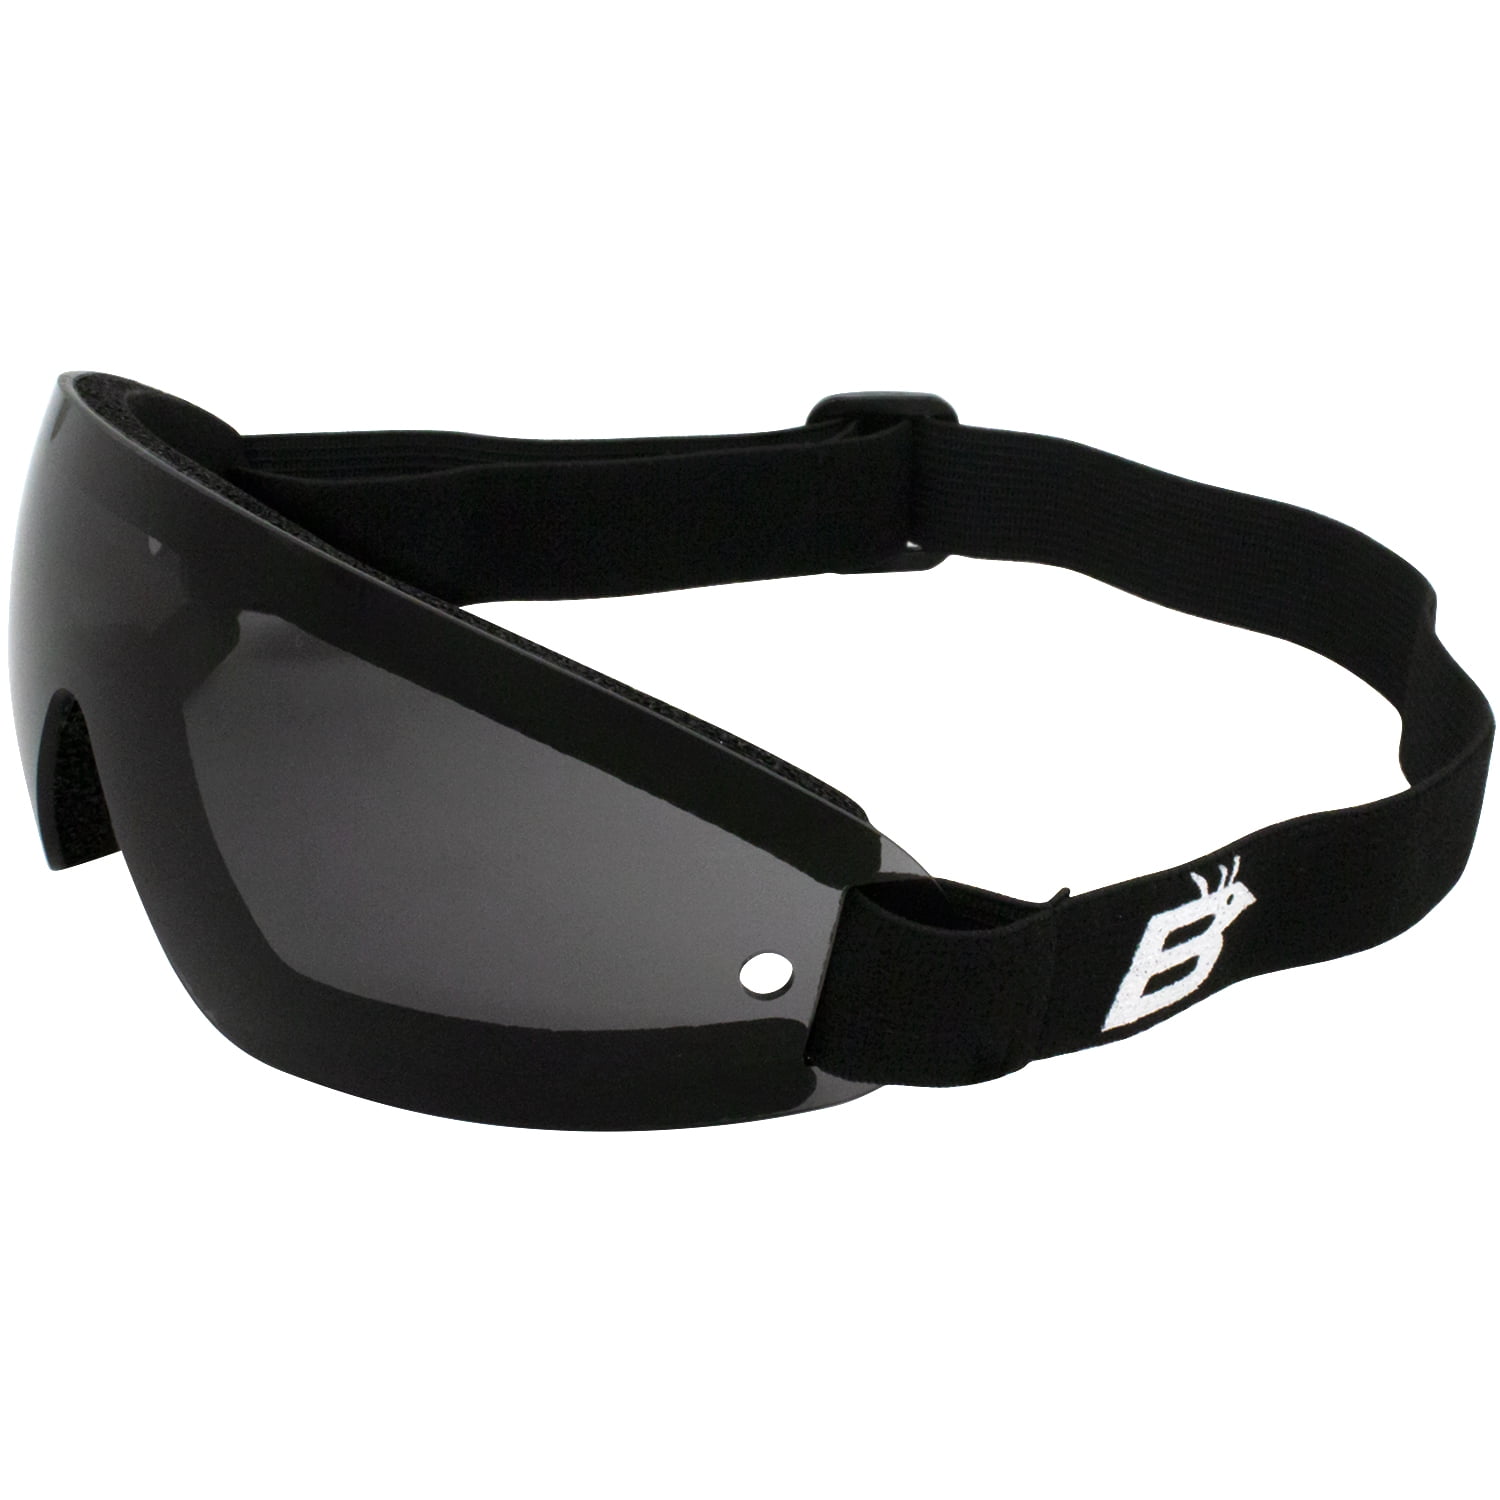 Trend Retro Goggles, Motorcycle Helmet Goggles